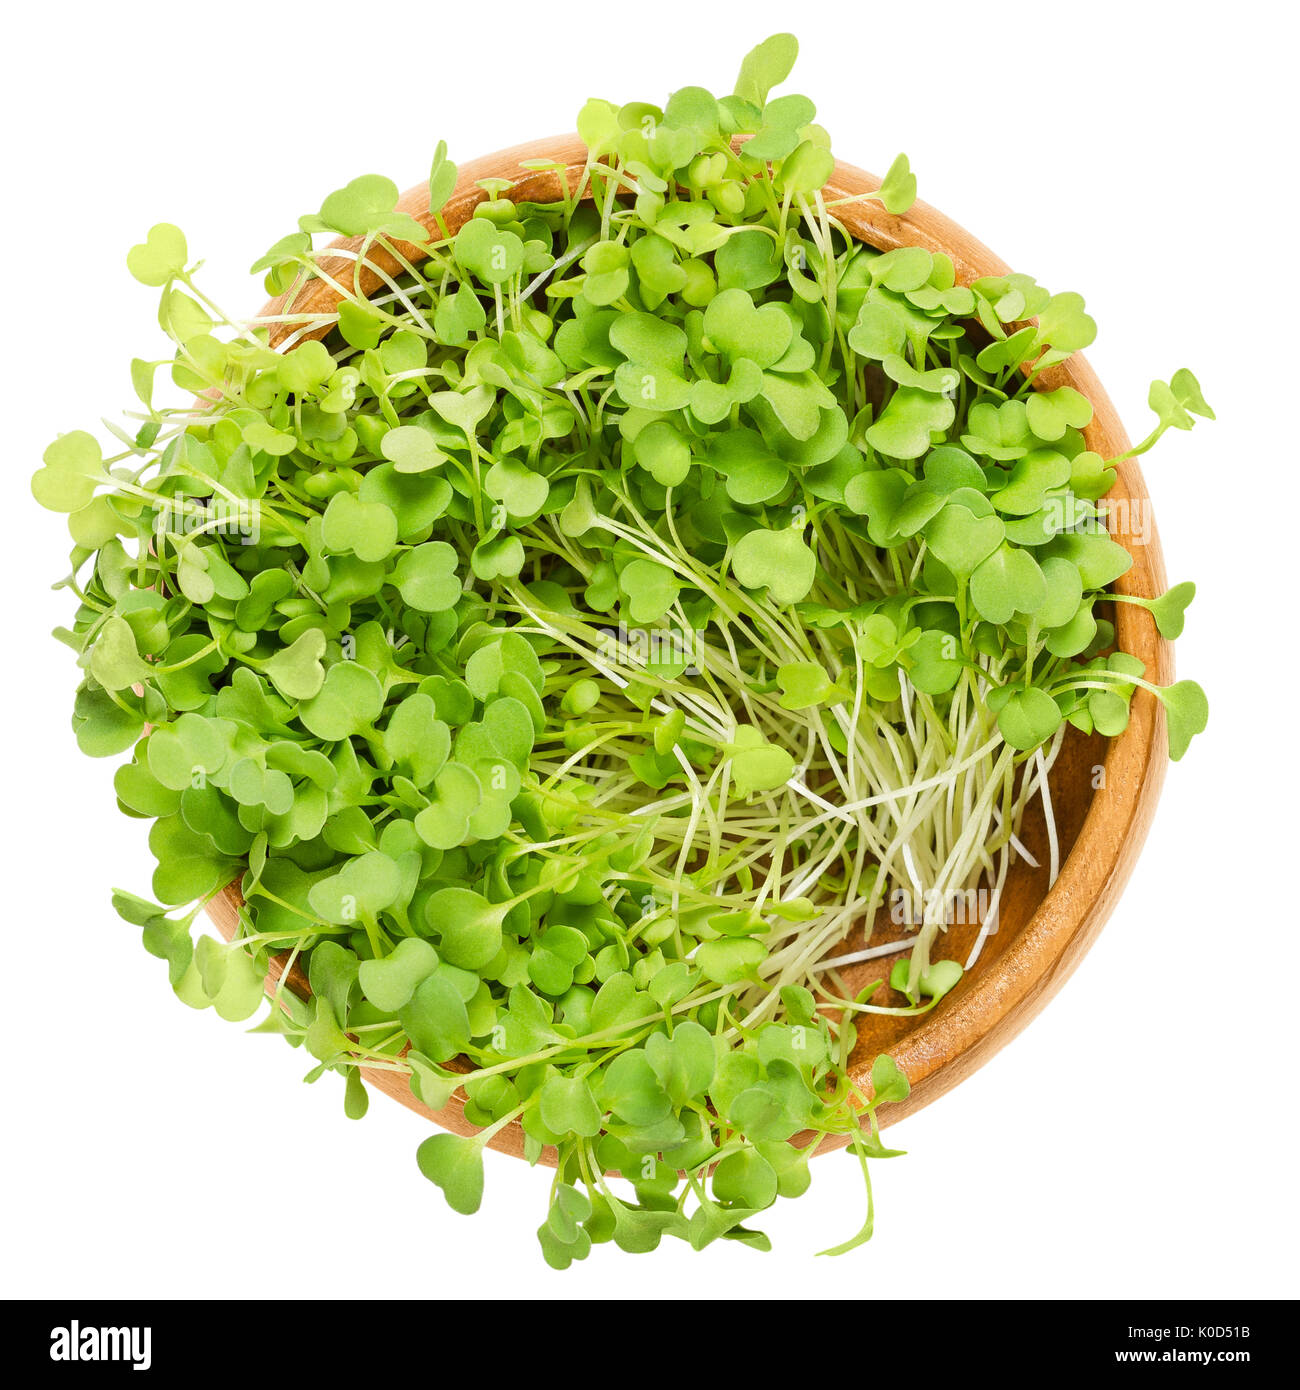 Salade de roquette germées dans bol en bois. Les feuilles et les cotylédons de roquette Eruca sativa, aussi, la roquette ou rugula microgreen et légumes Salade.. Banque D'Images